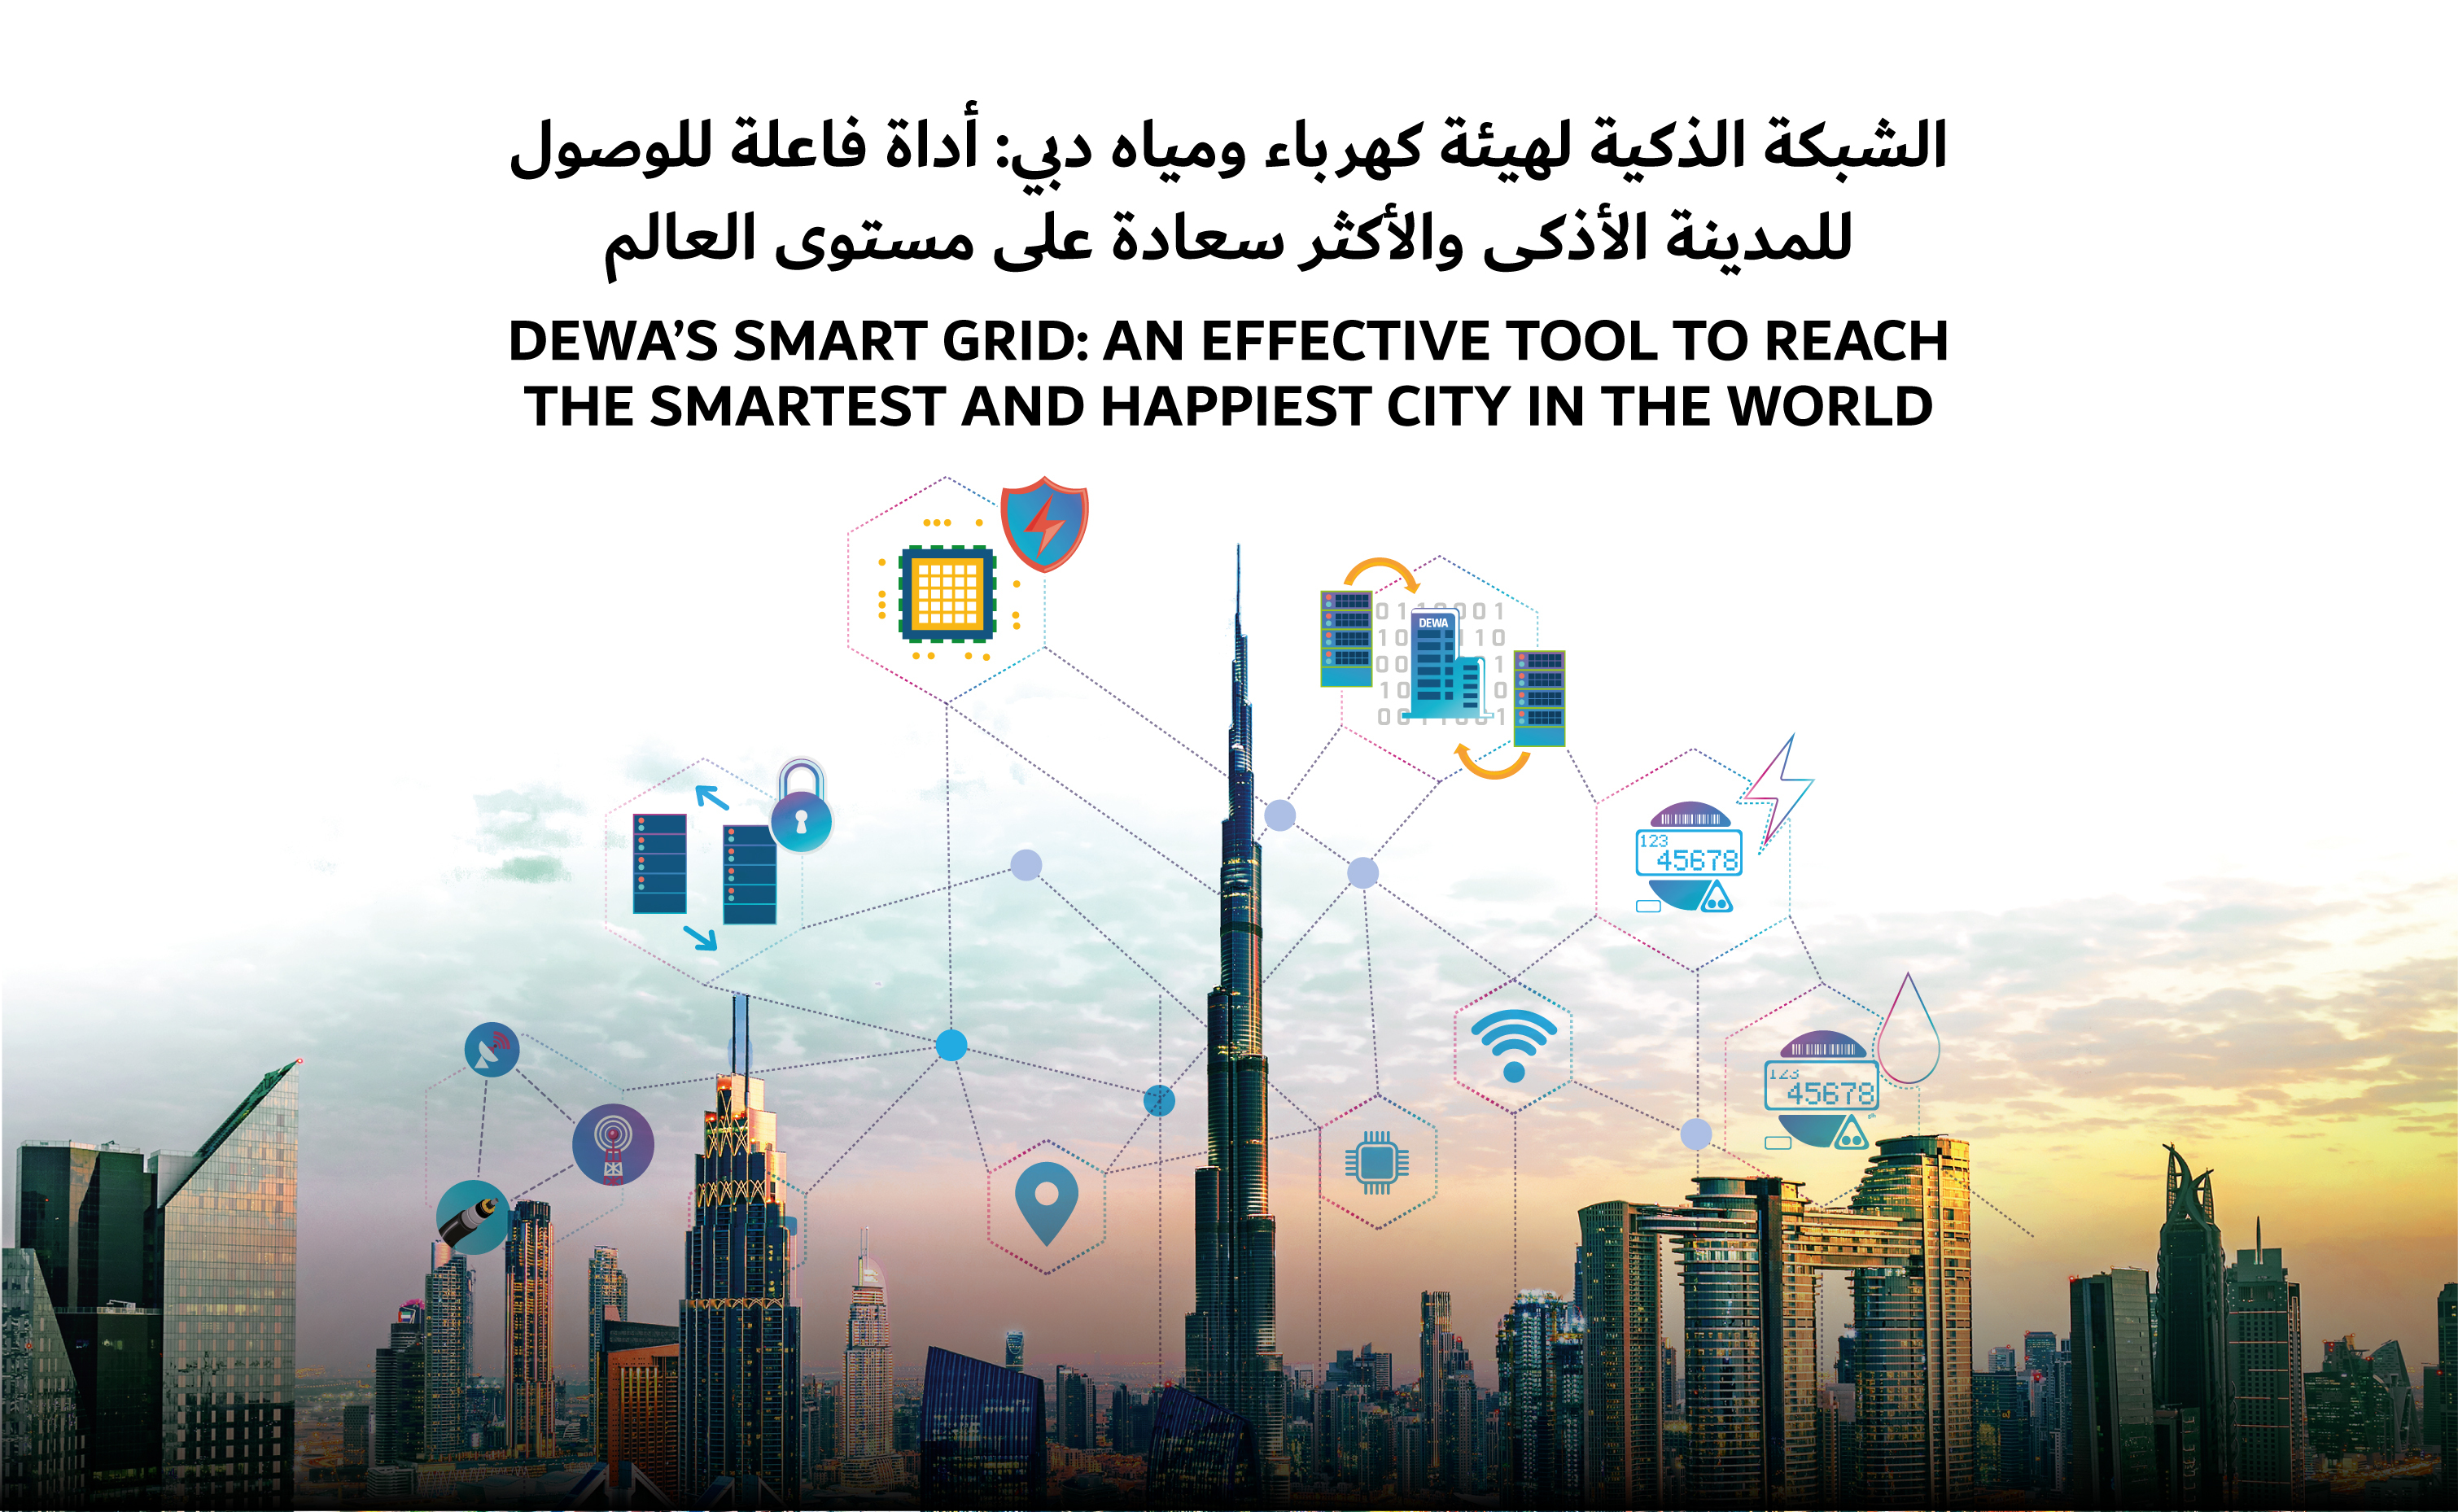 الشبكة الذكية لهيئة كهرباء ومياه دبي: أداة فاعلة للوصول للمدينة الأذكى بالعالم